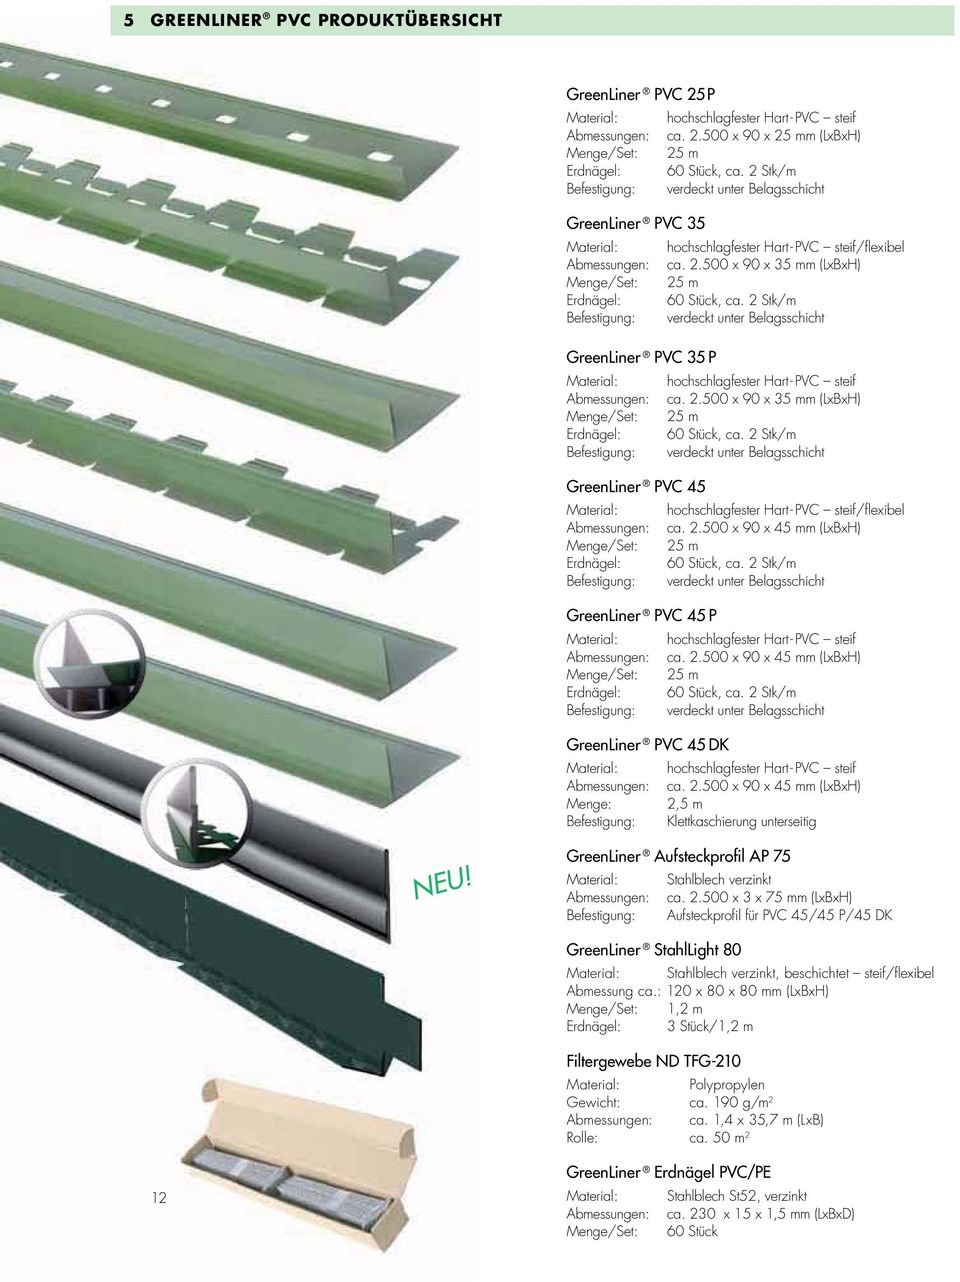 2 Stk/m Befestigung: verdeckt unter Belagsschicht GreenLiner PVC 35 P Material: hochschlagfester Hart- PVC steif Abmessungen: ca. 2.500 x 90 x 35 mm (LxBxH) Erdnägel: 60 Stück, ca.